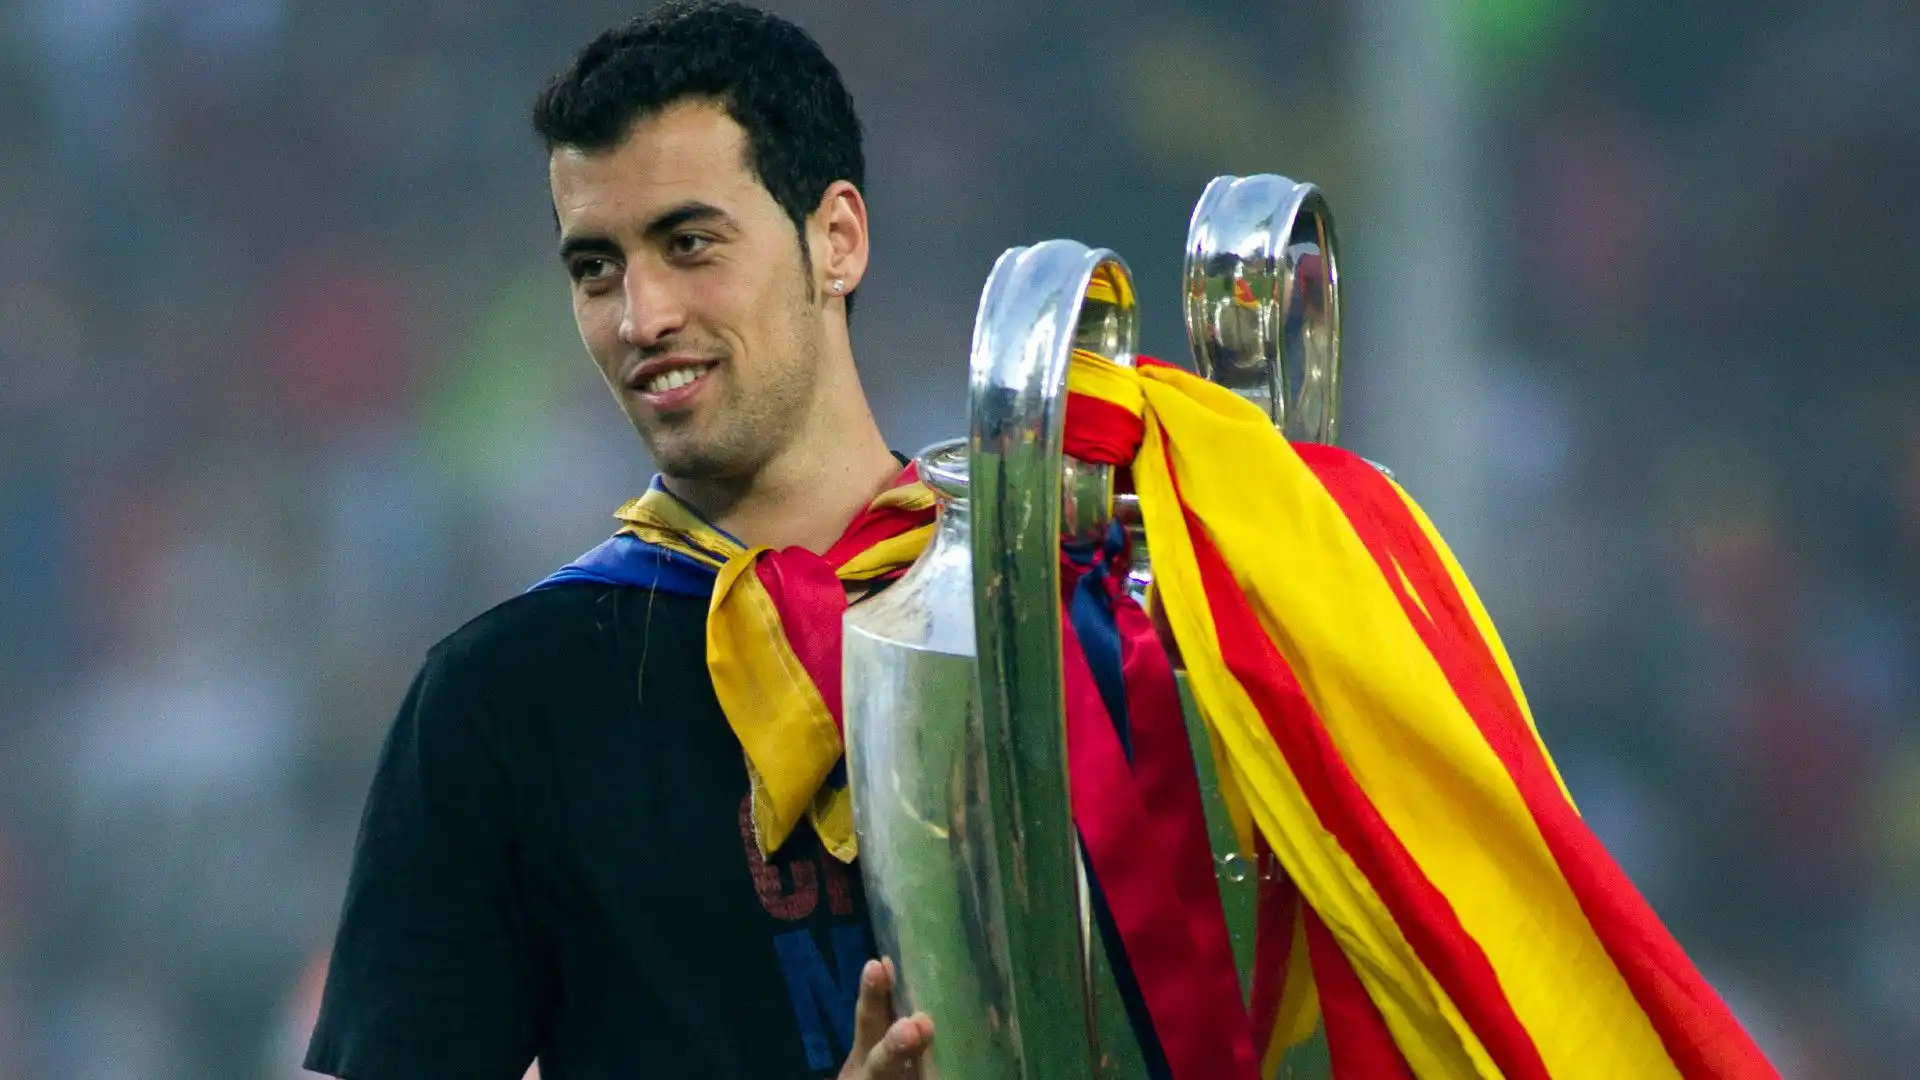 Con il Barcellona Busquets ha conquistato 31 trofei, tra cui 3 Champions League, 3 Supercoppe UEFA e 8 campionati di Spagna